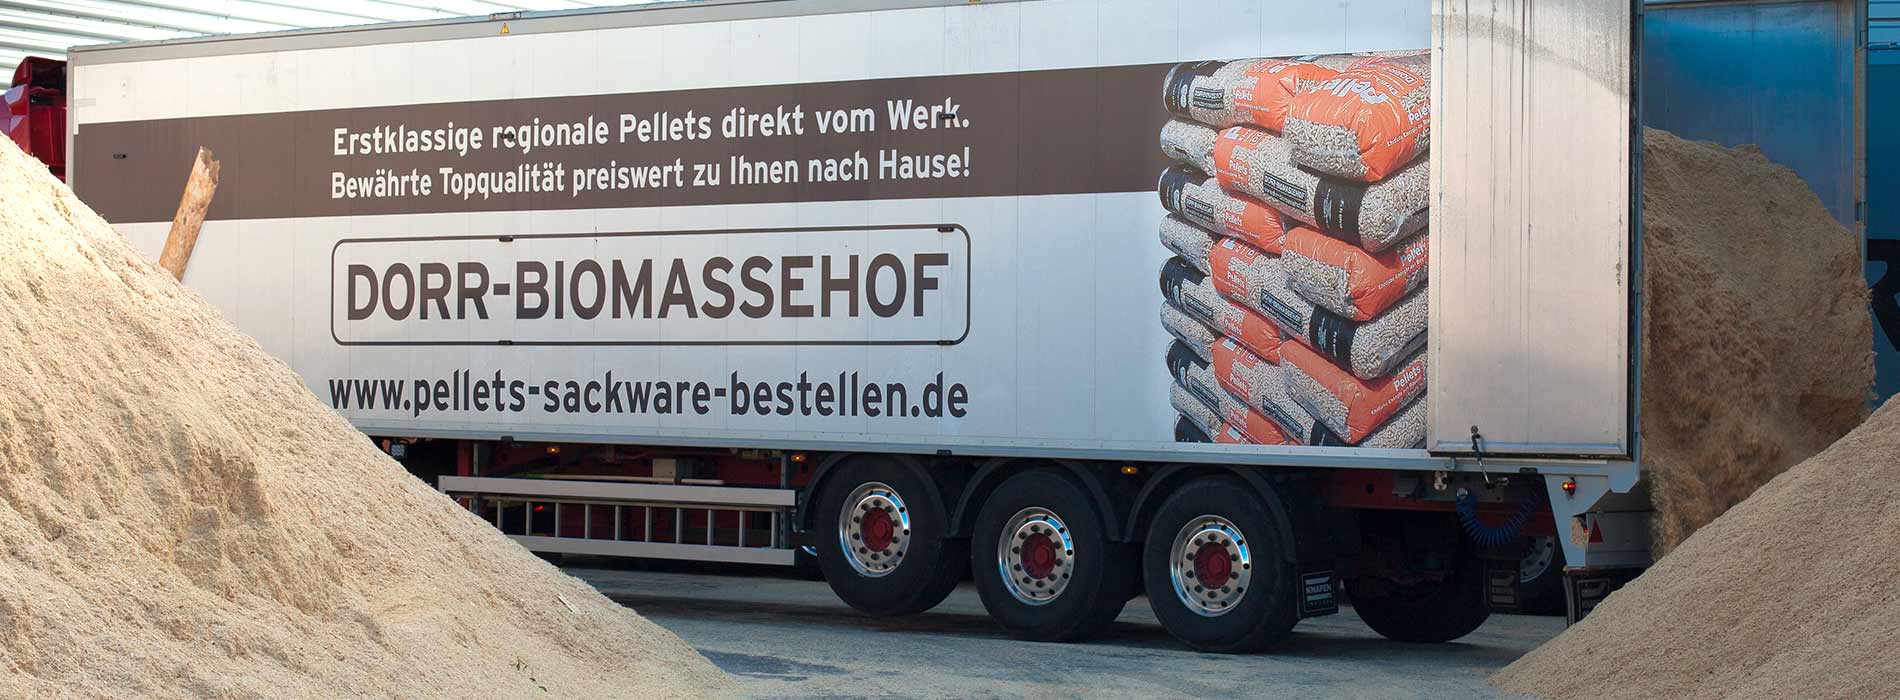 Dorr-Biomassehof Pellets Direktlieferung vom Werk